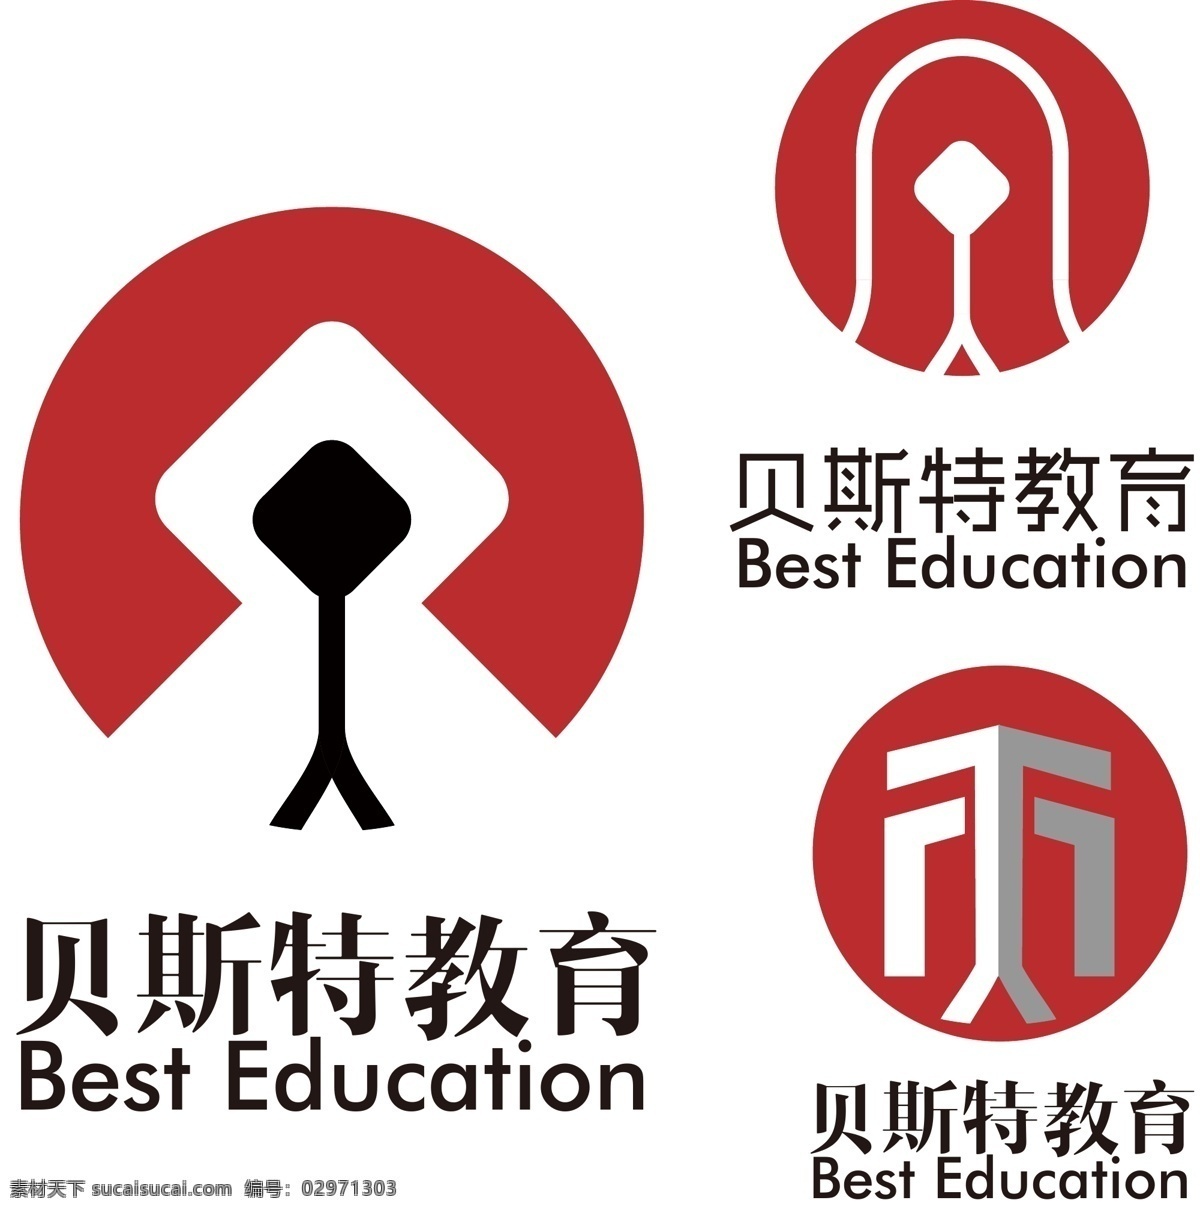 贝斯特教育 教育 标志 标识 企业 logo 辅助图形 图形延伸 字母创意 创意 标志图标